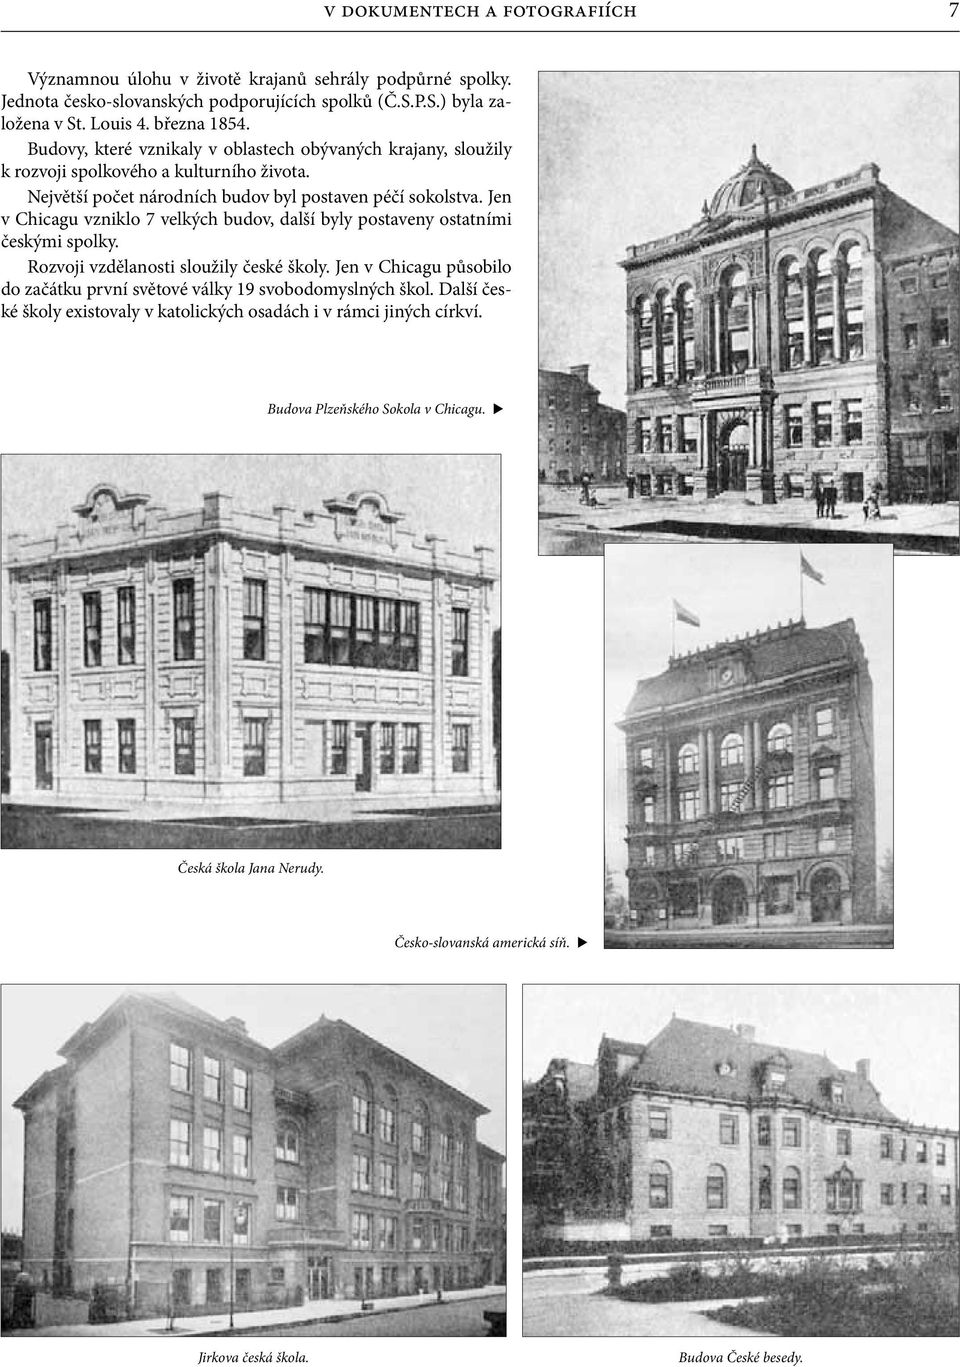 Jen v Chicagu vzniklo 7 velkých budov, další byly postaveny ostatními českými spolky. Rozvoji vzdělanosti sloužily české školy.